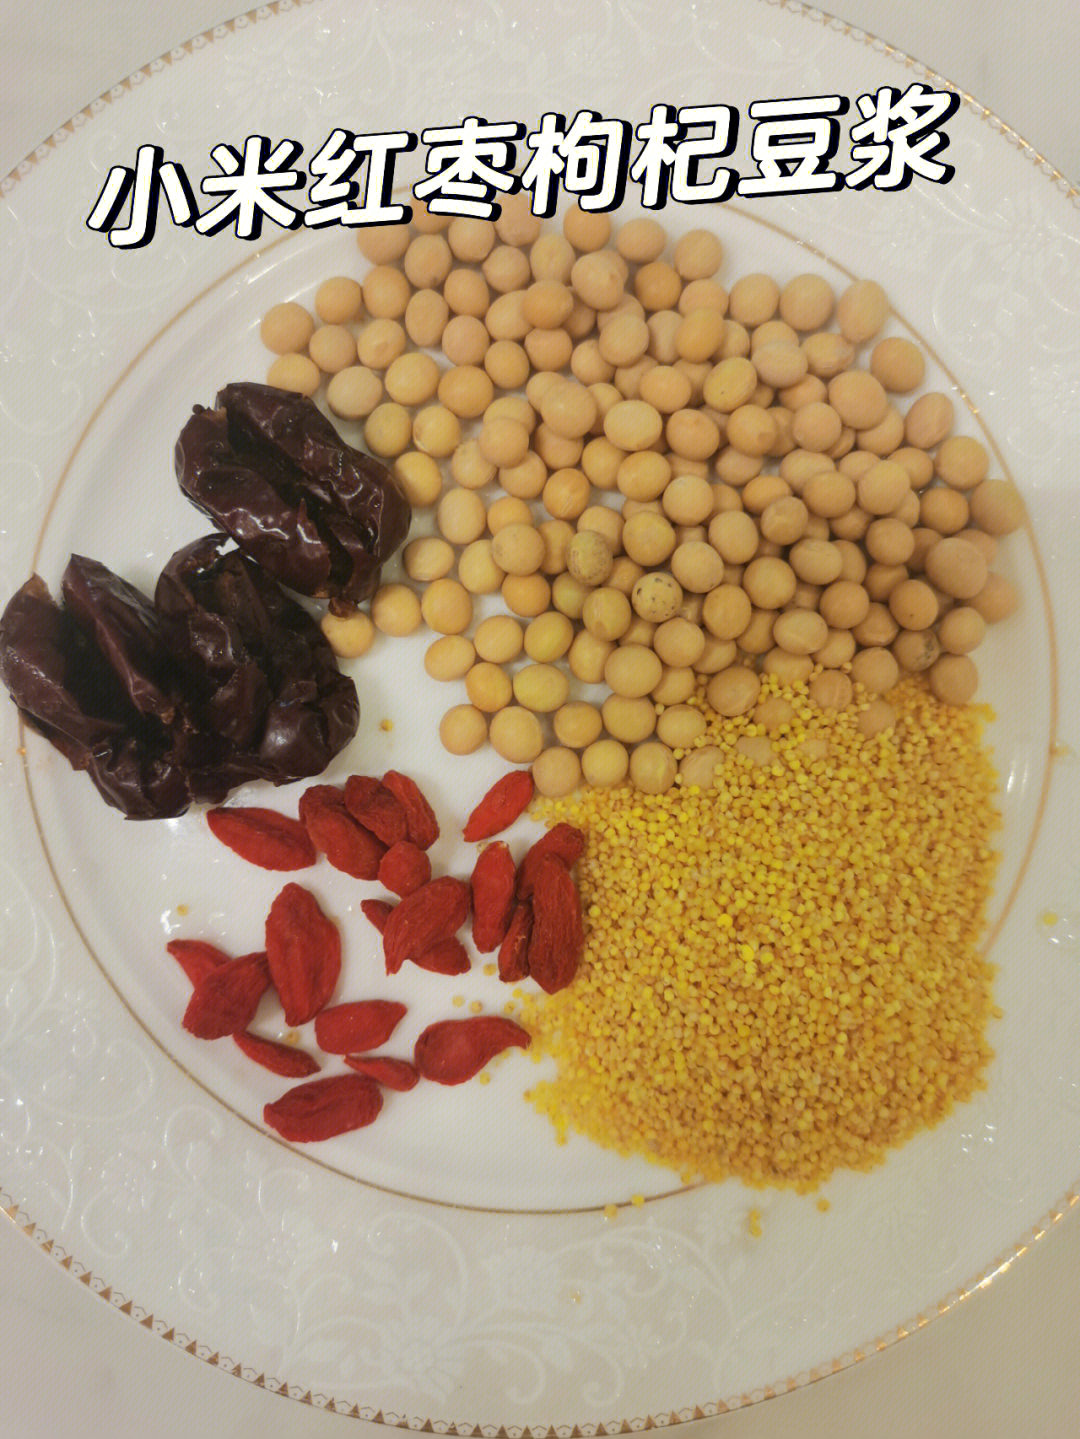 豆浆燕麦片功效与作用_红枣豆浆的功效与作用_长期喝红枣花生黄豆浆功效